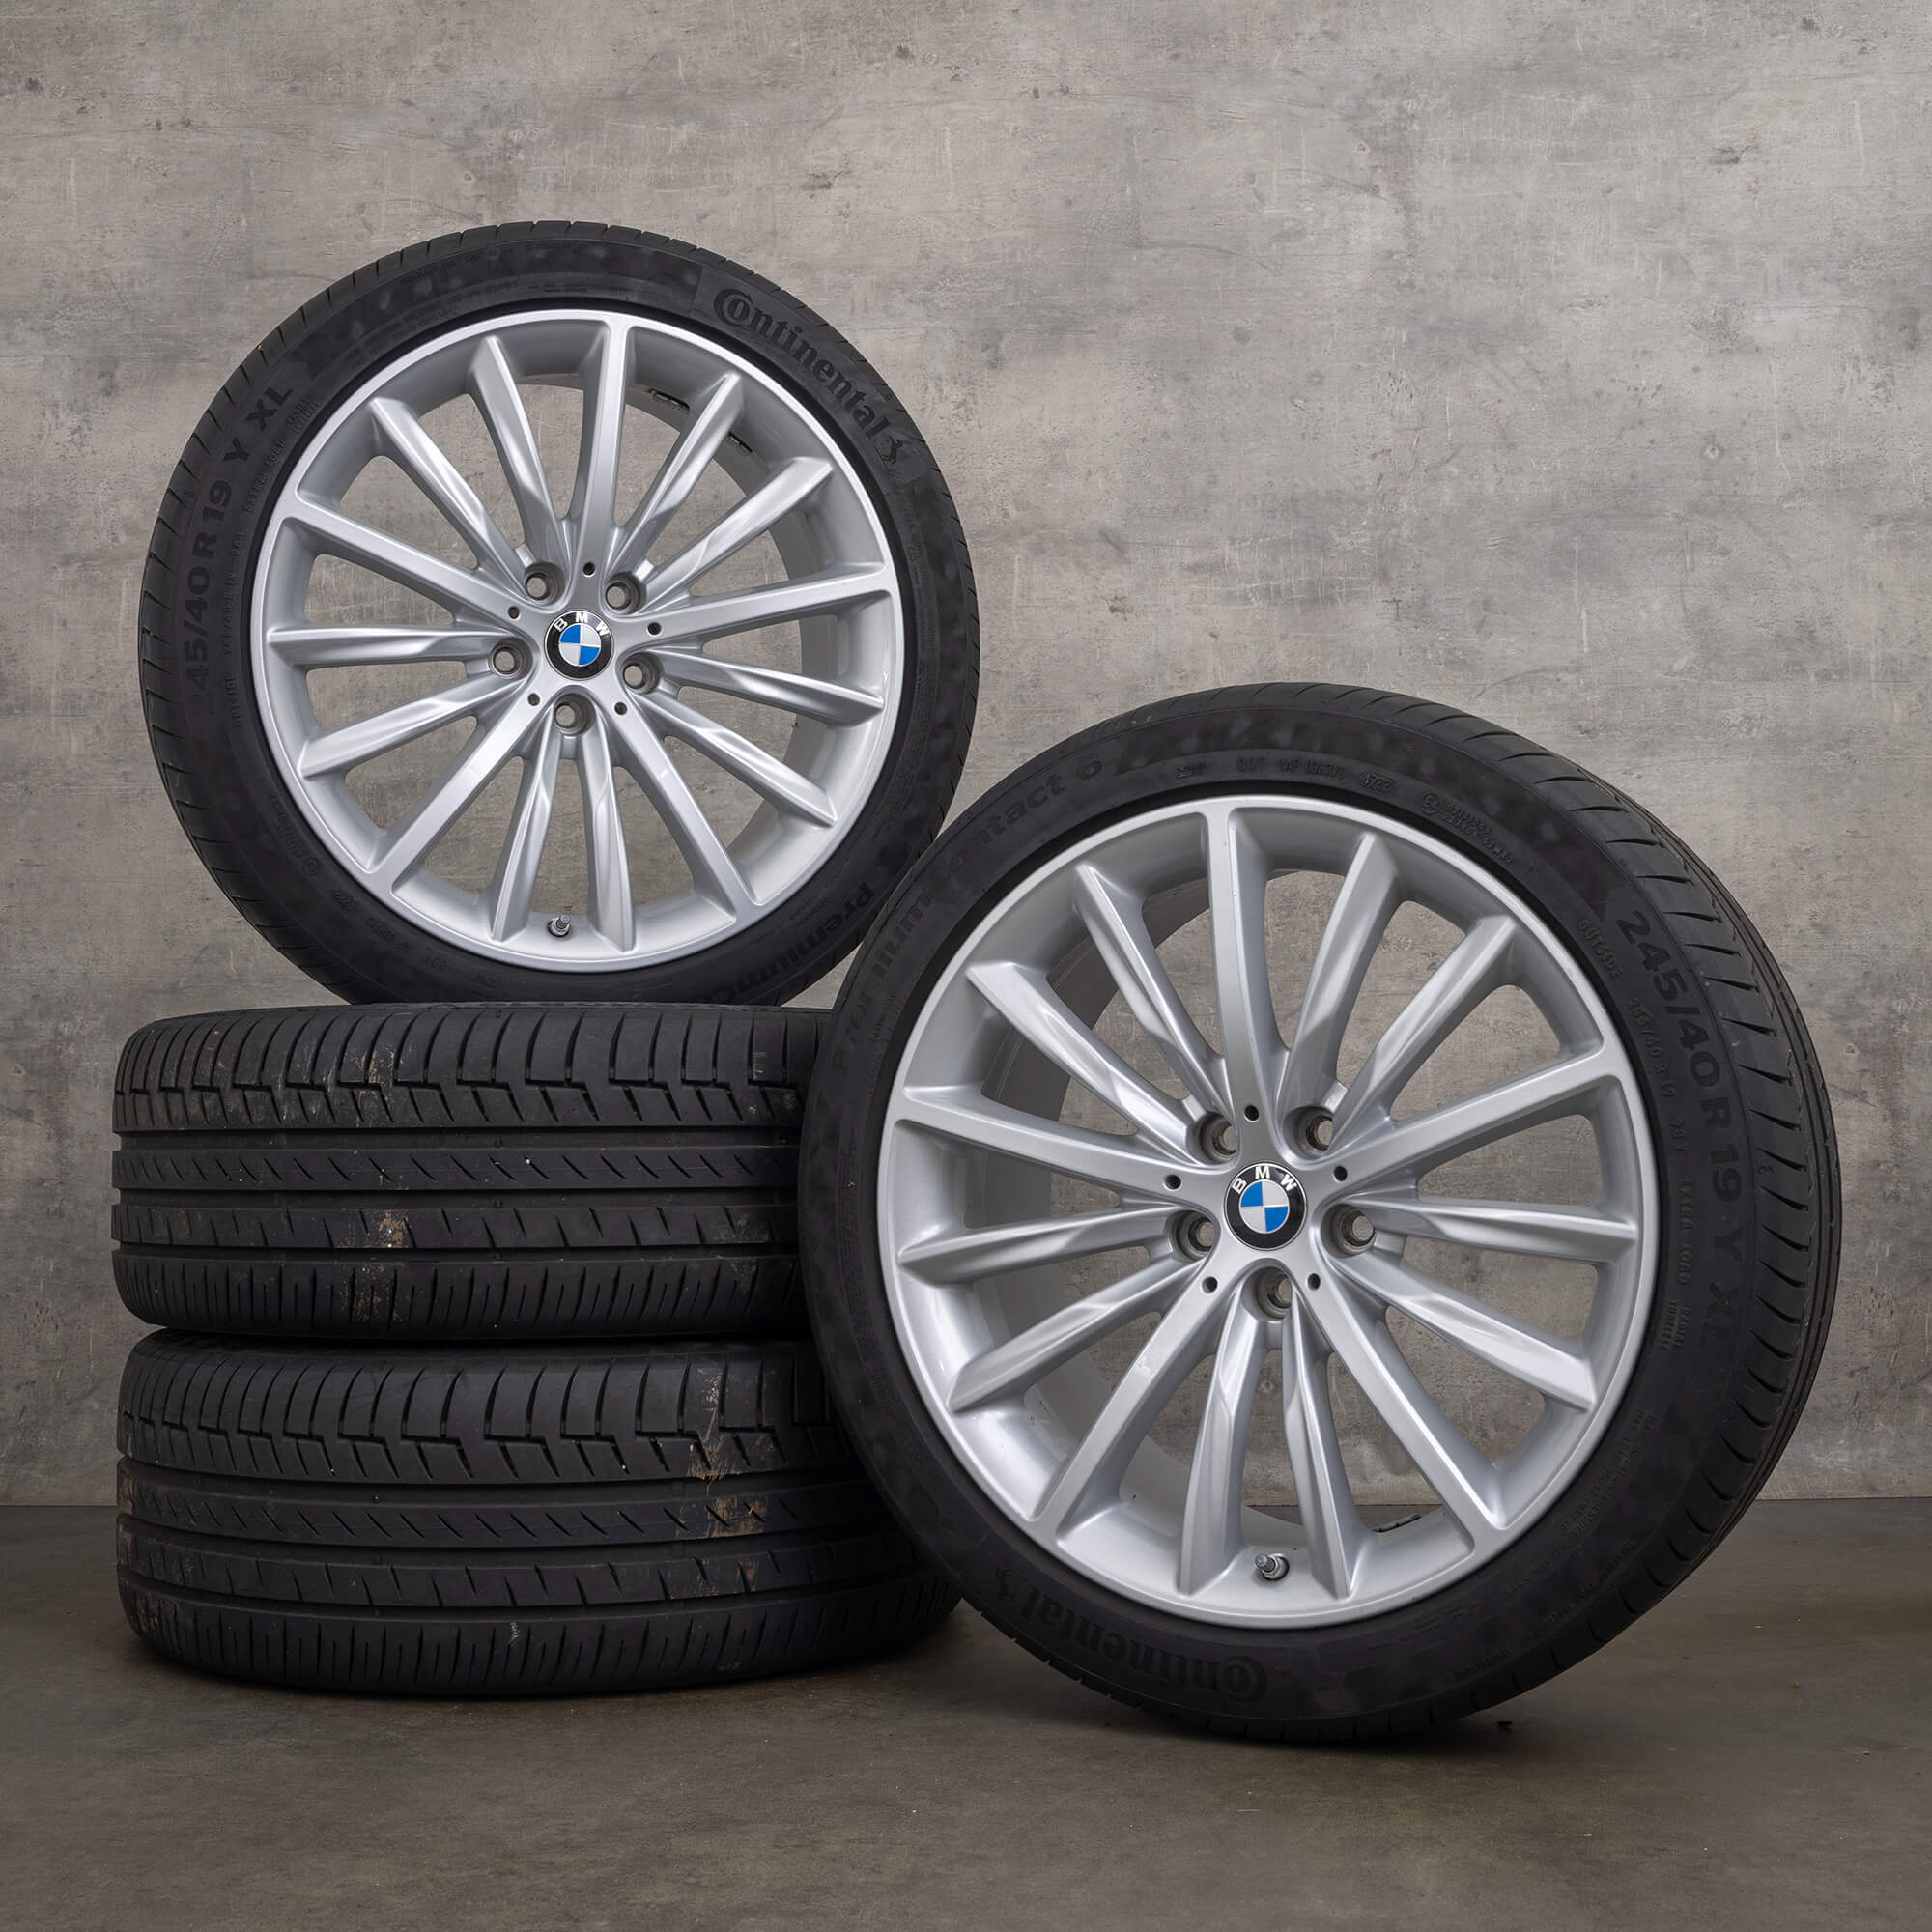 Originální letni pneumatiky BMW řady 5 G30 G31 19 palcové ráfky styl 633 6863419 stříbrná alu kola